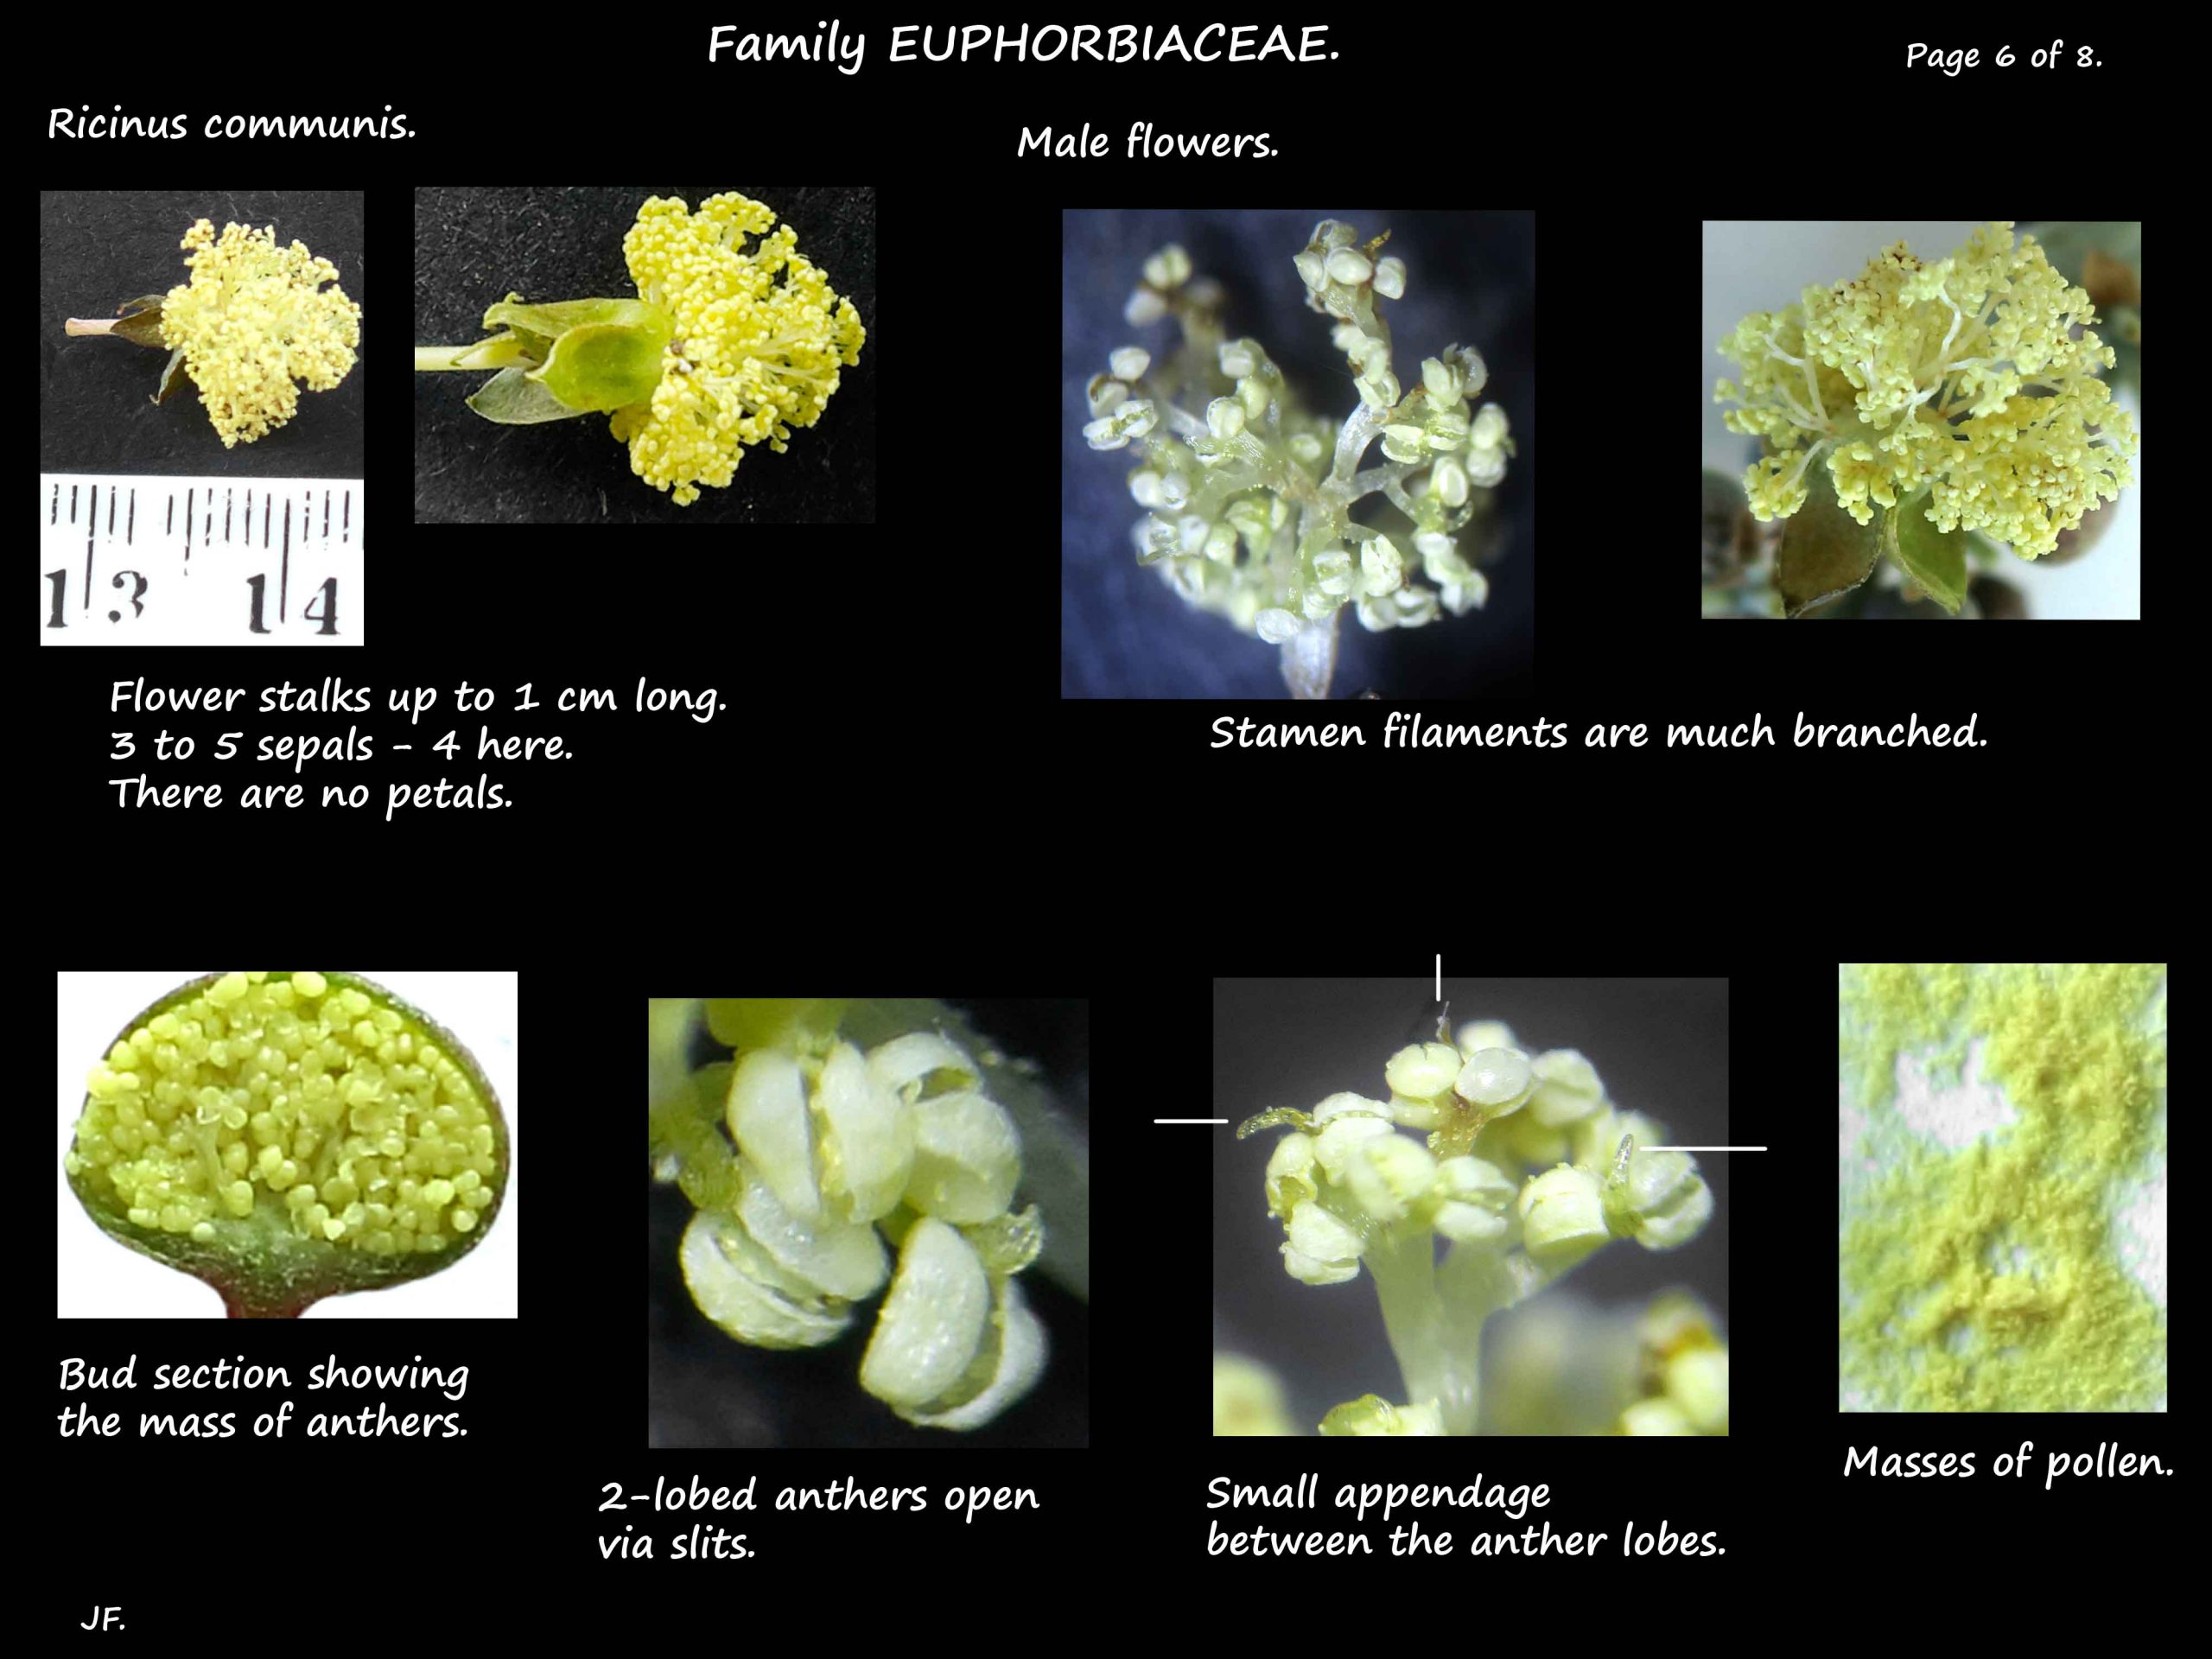 6 Male flowers of Ricinus communis